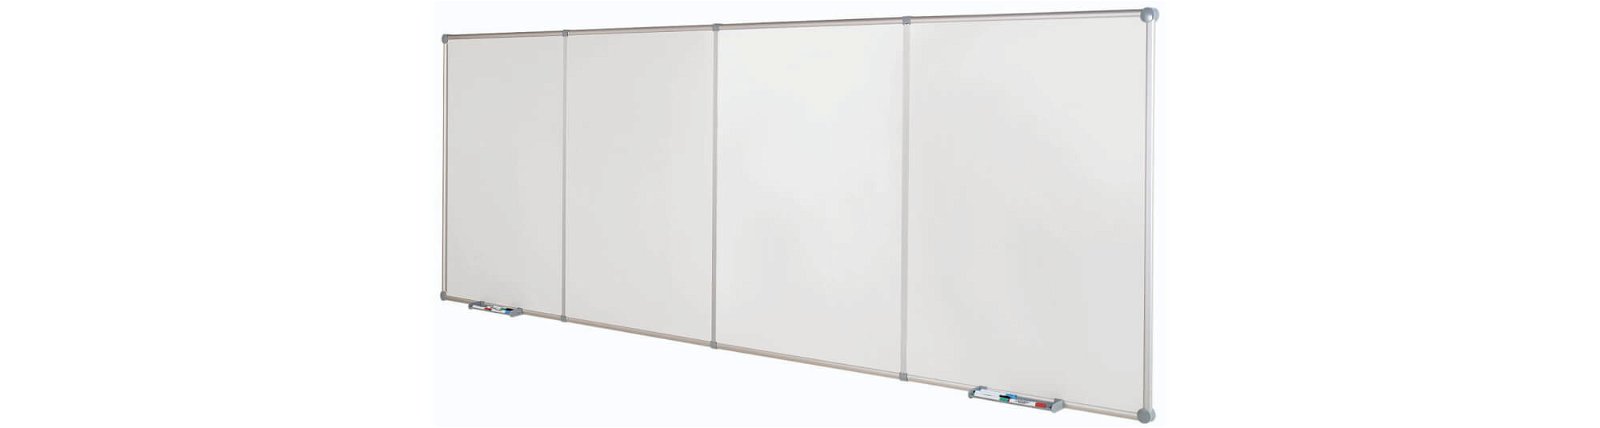 Endlos-Whiteboard Erweite- rung, 120x90 cm, hoch, grau